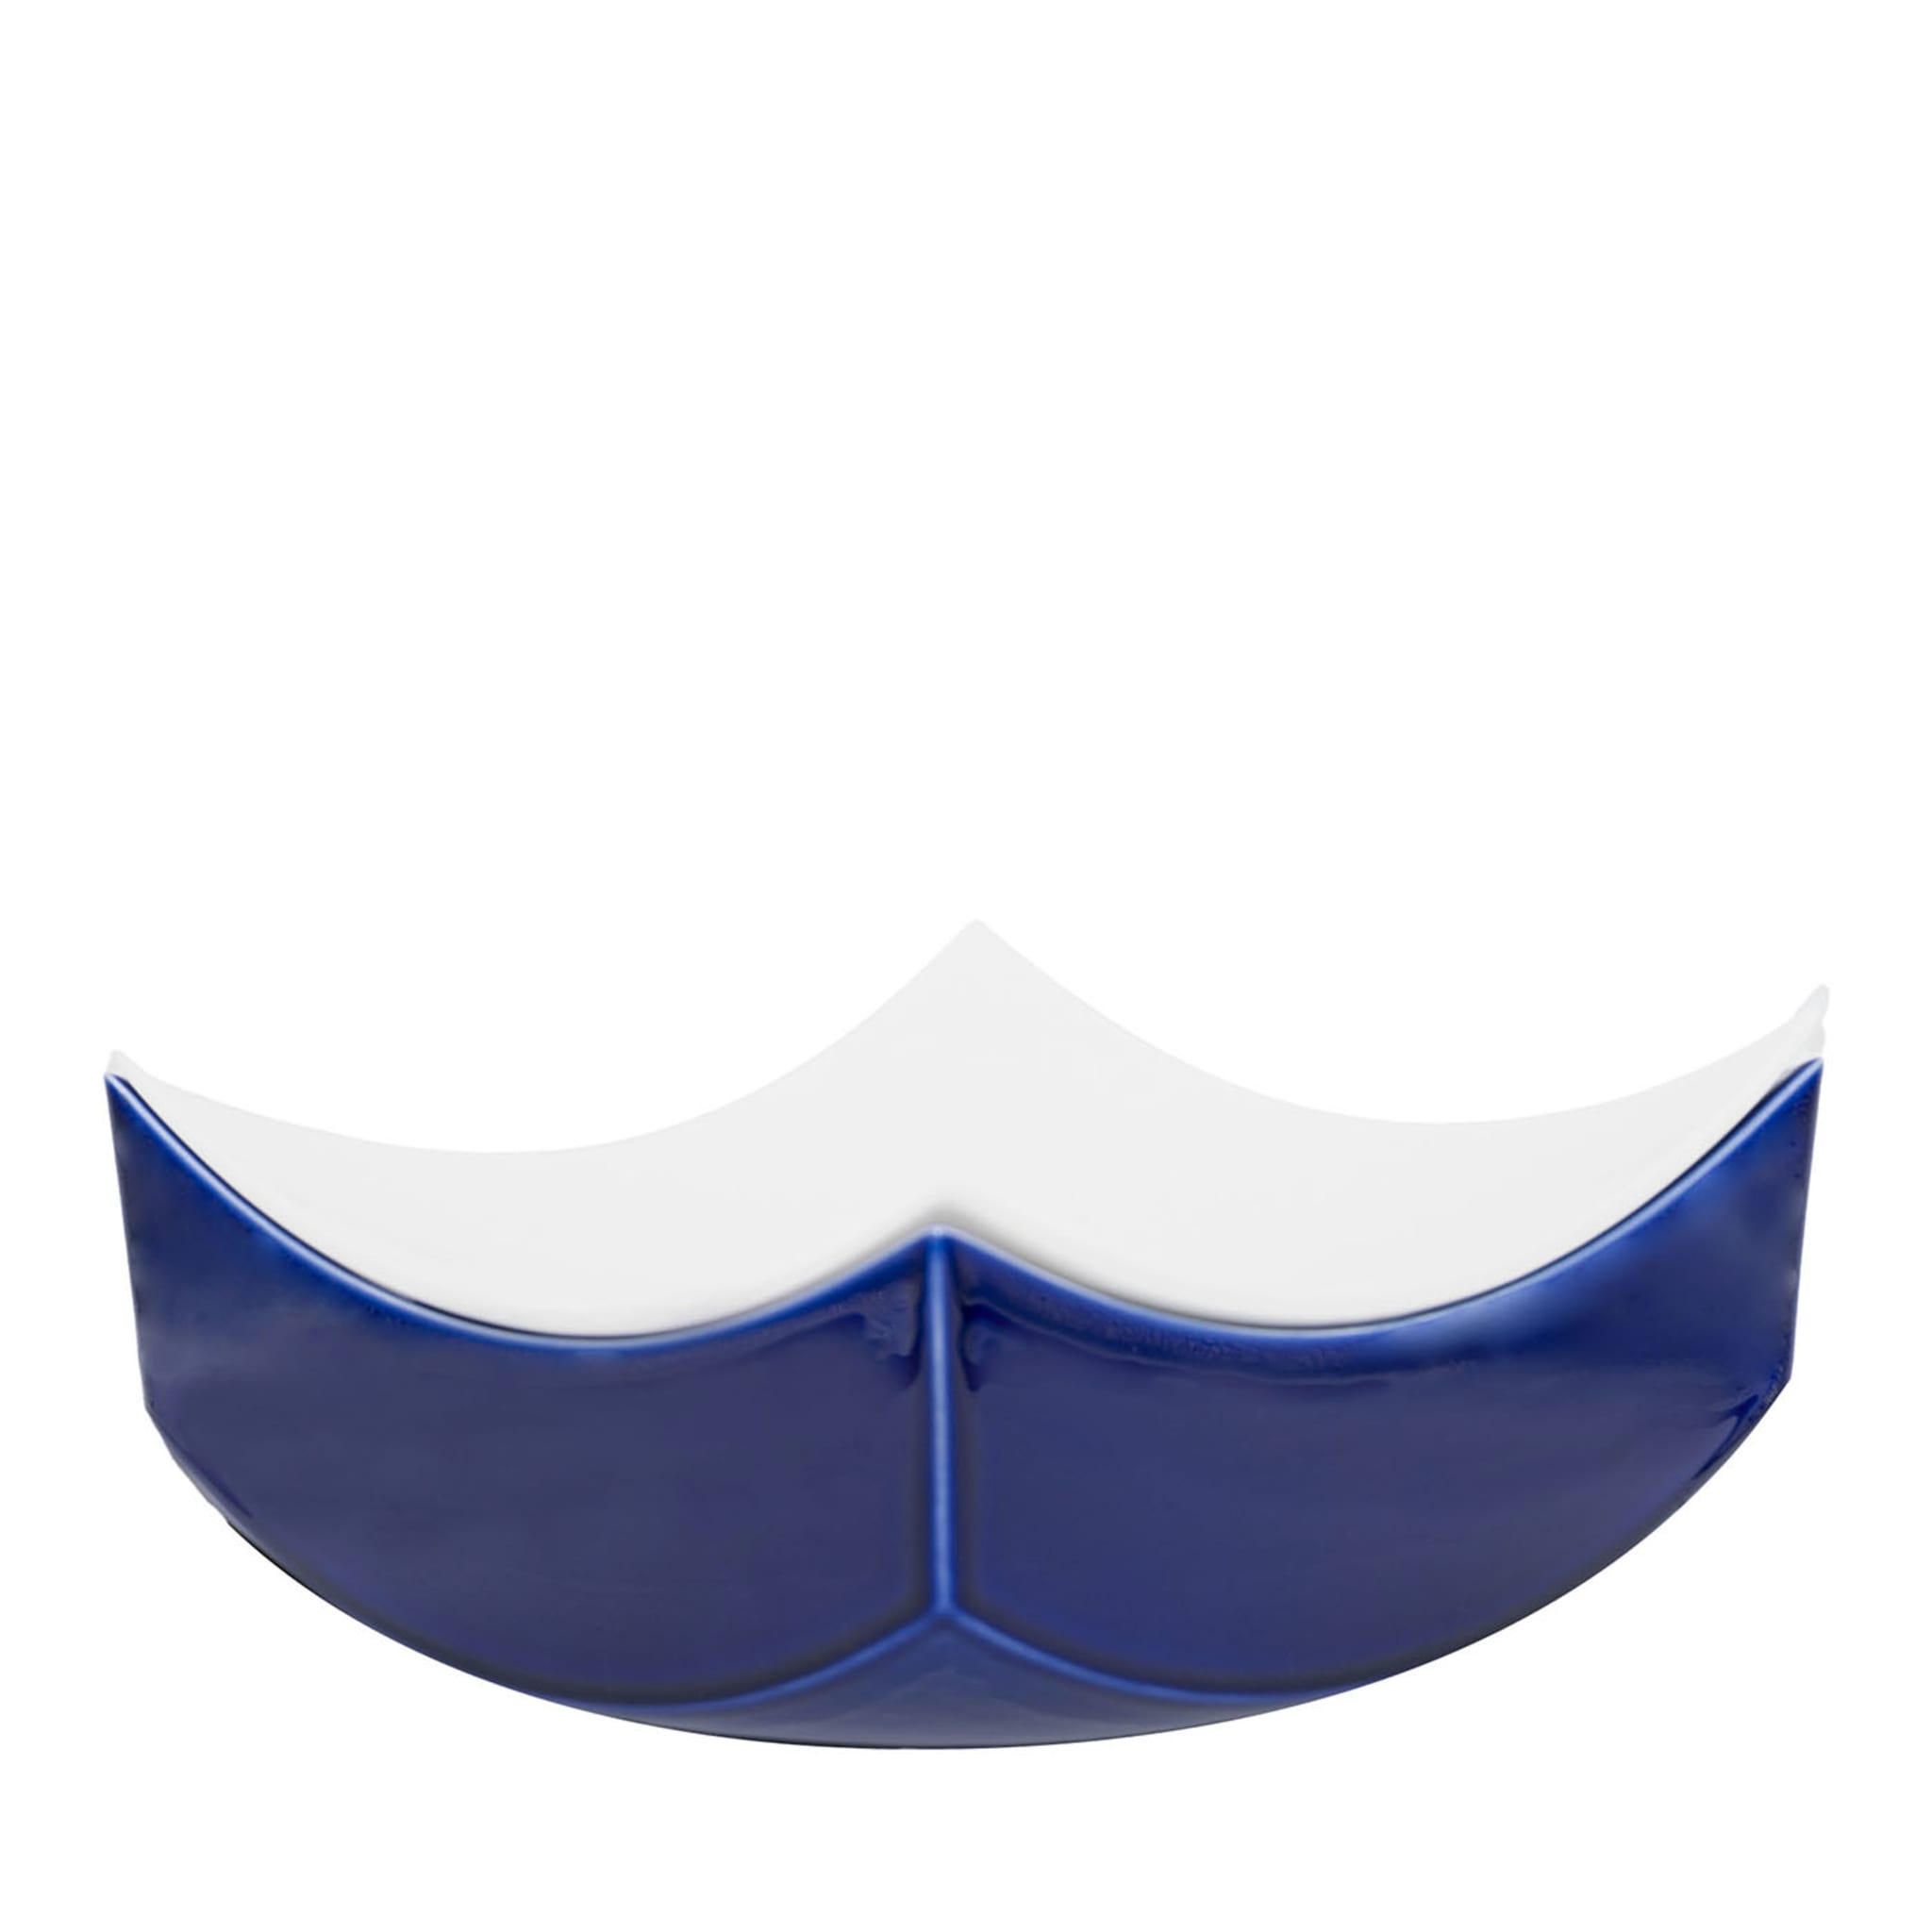 Blau-weiße Bonbonschüssel Wave von Cristian Visentin - Hauptansicht